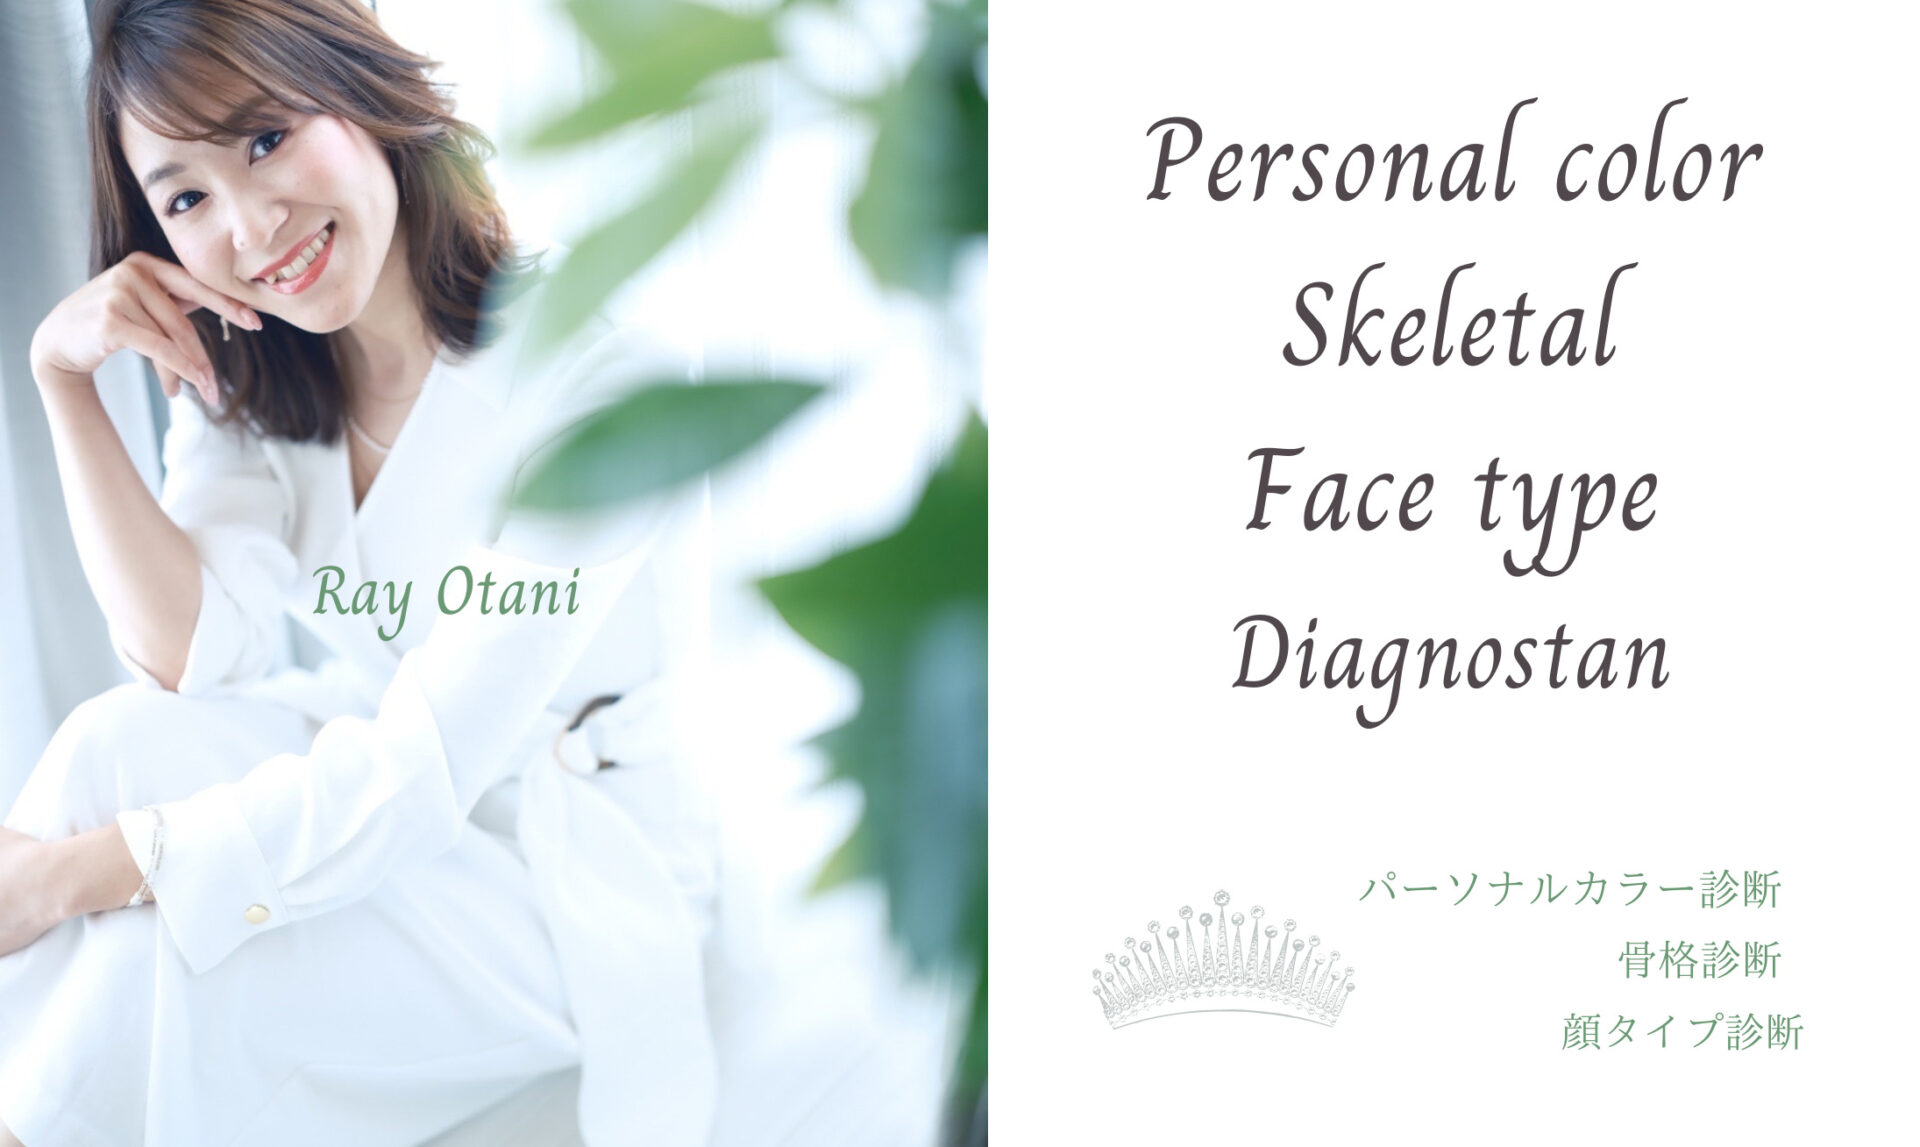 札幌でパーソナルカラー診断、骨格診断、顔タイプ診断ができる大谷れいさんです。